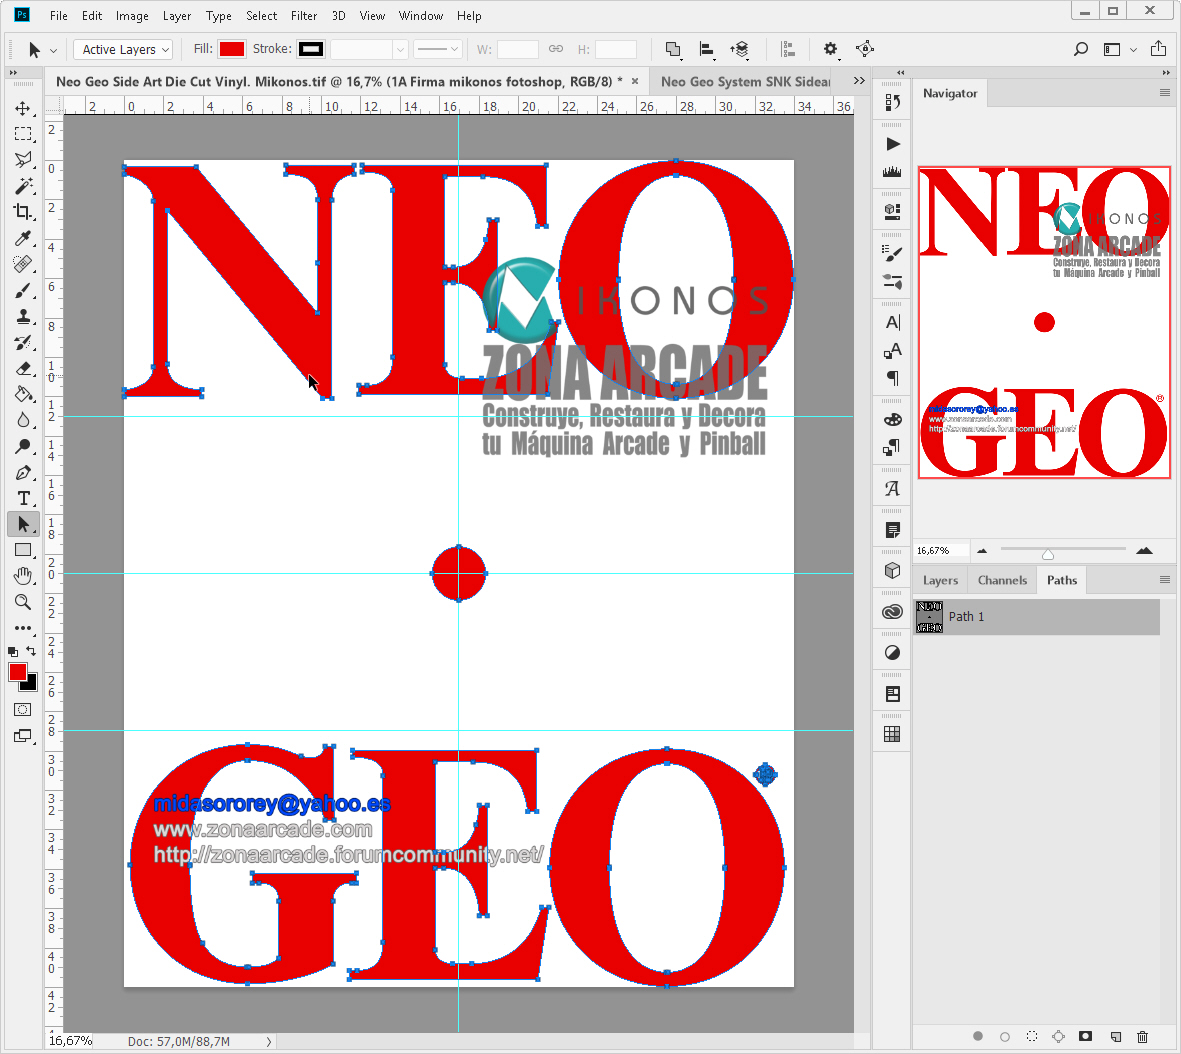 Neo-Geo-Custom-Side-Arts-in-Red-Die-Cut-Vinyl-Mikonos1